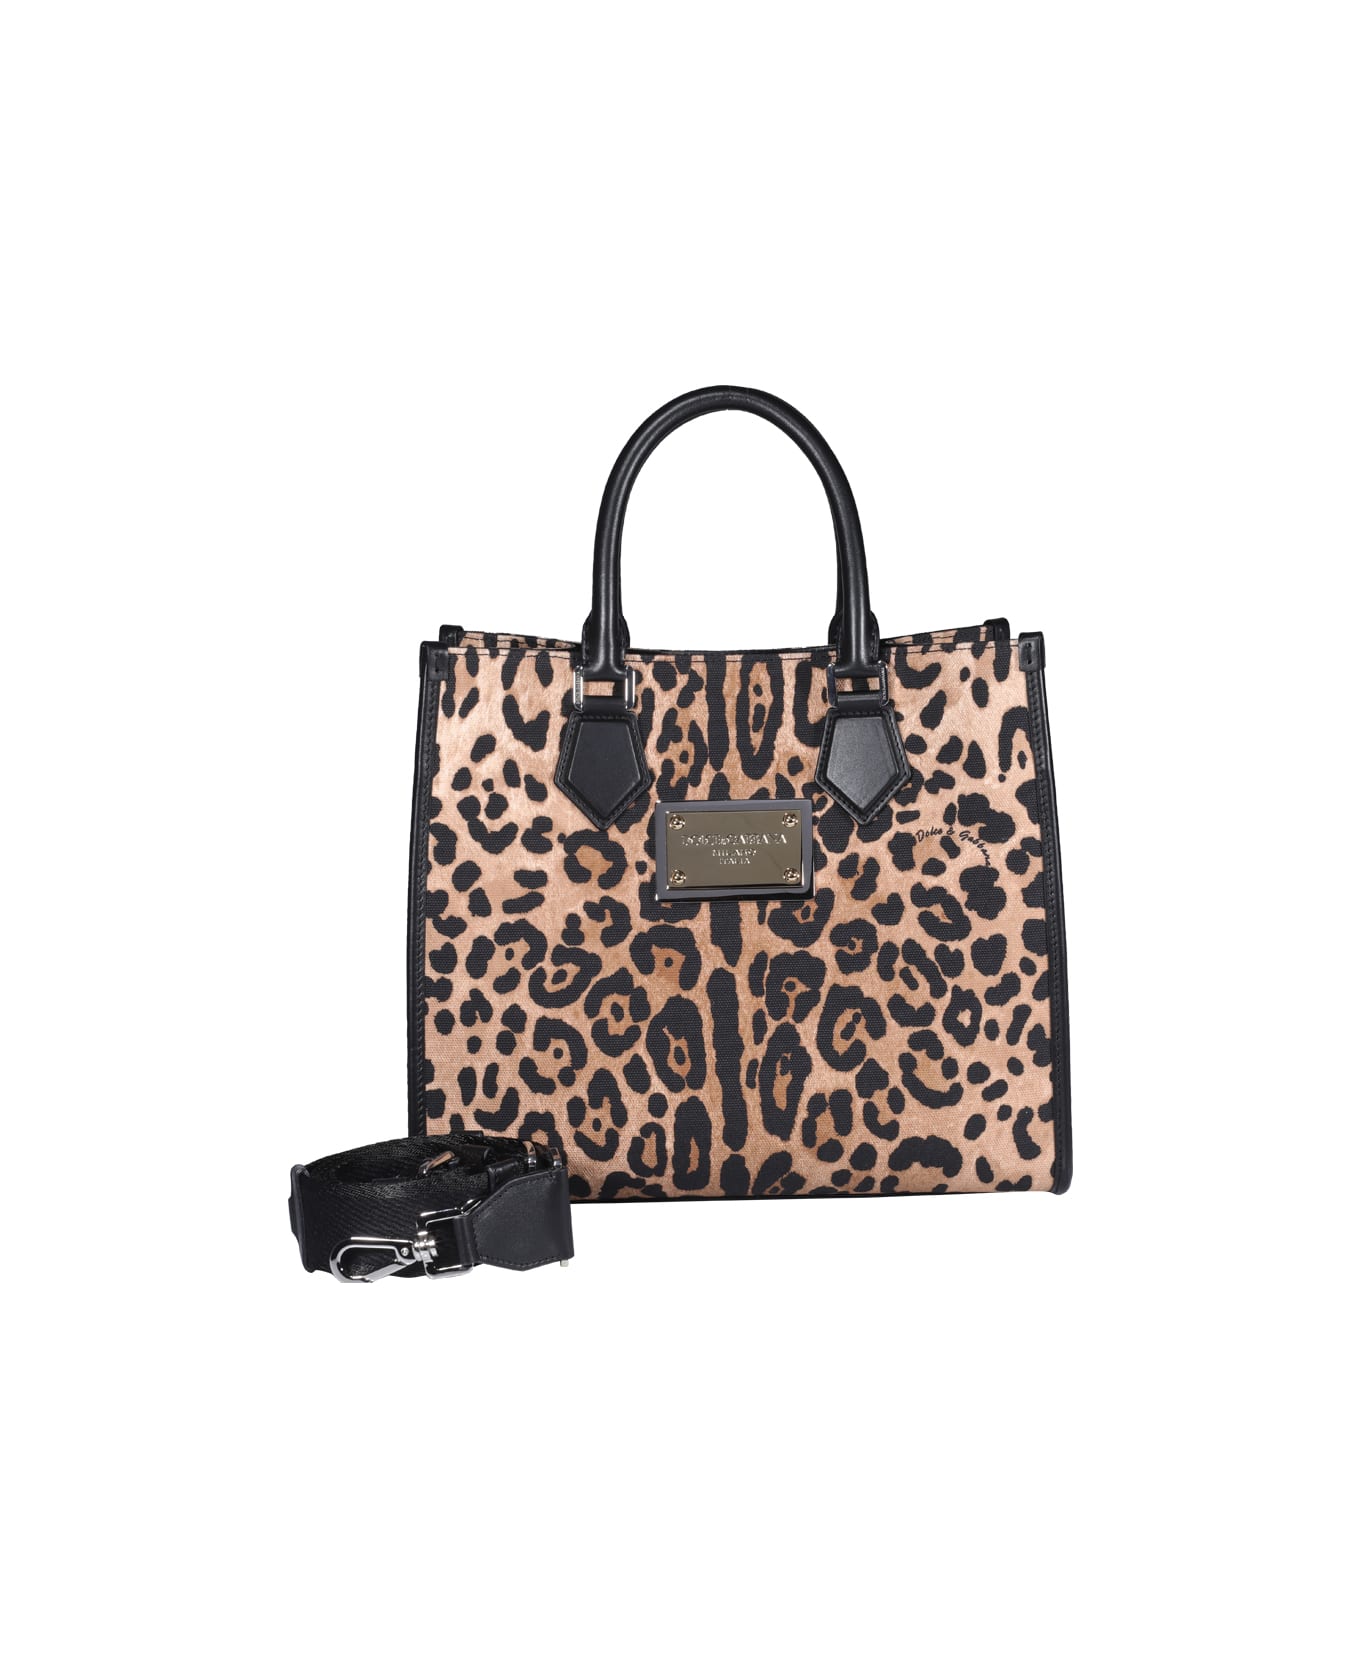 Dolce & Gabbana Leo Print Shopping Bag - Animalier